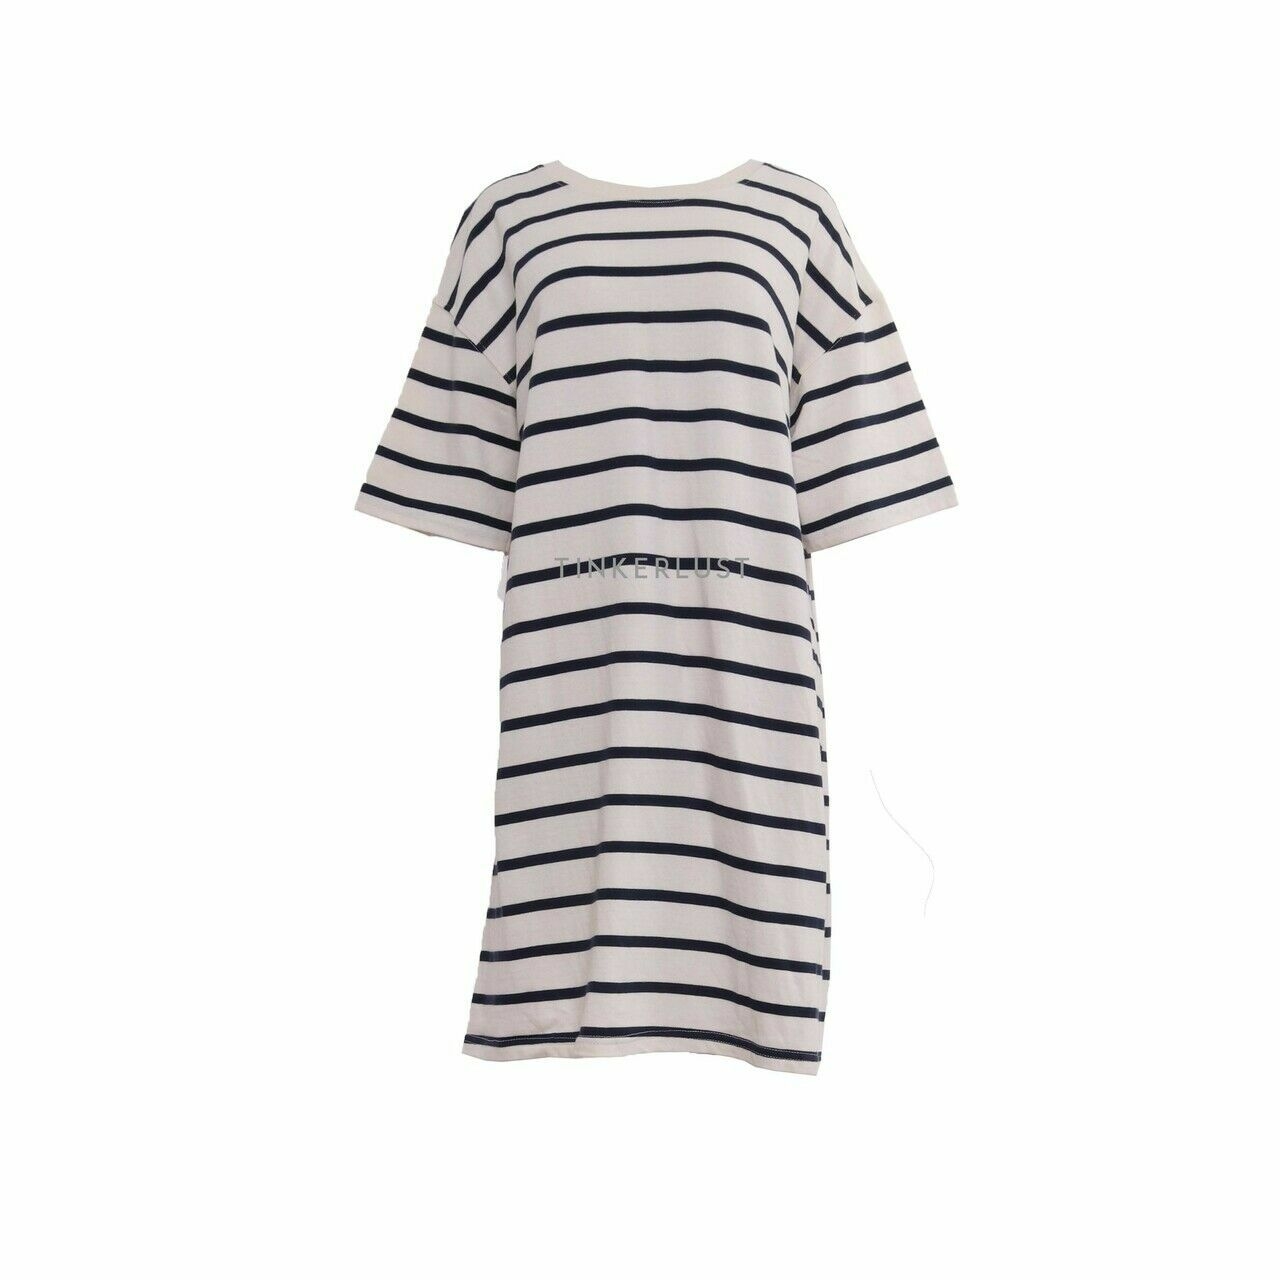 Zara Navy & Off White Stripes Tunic Blouse